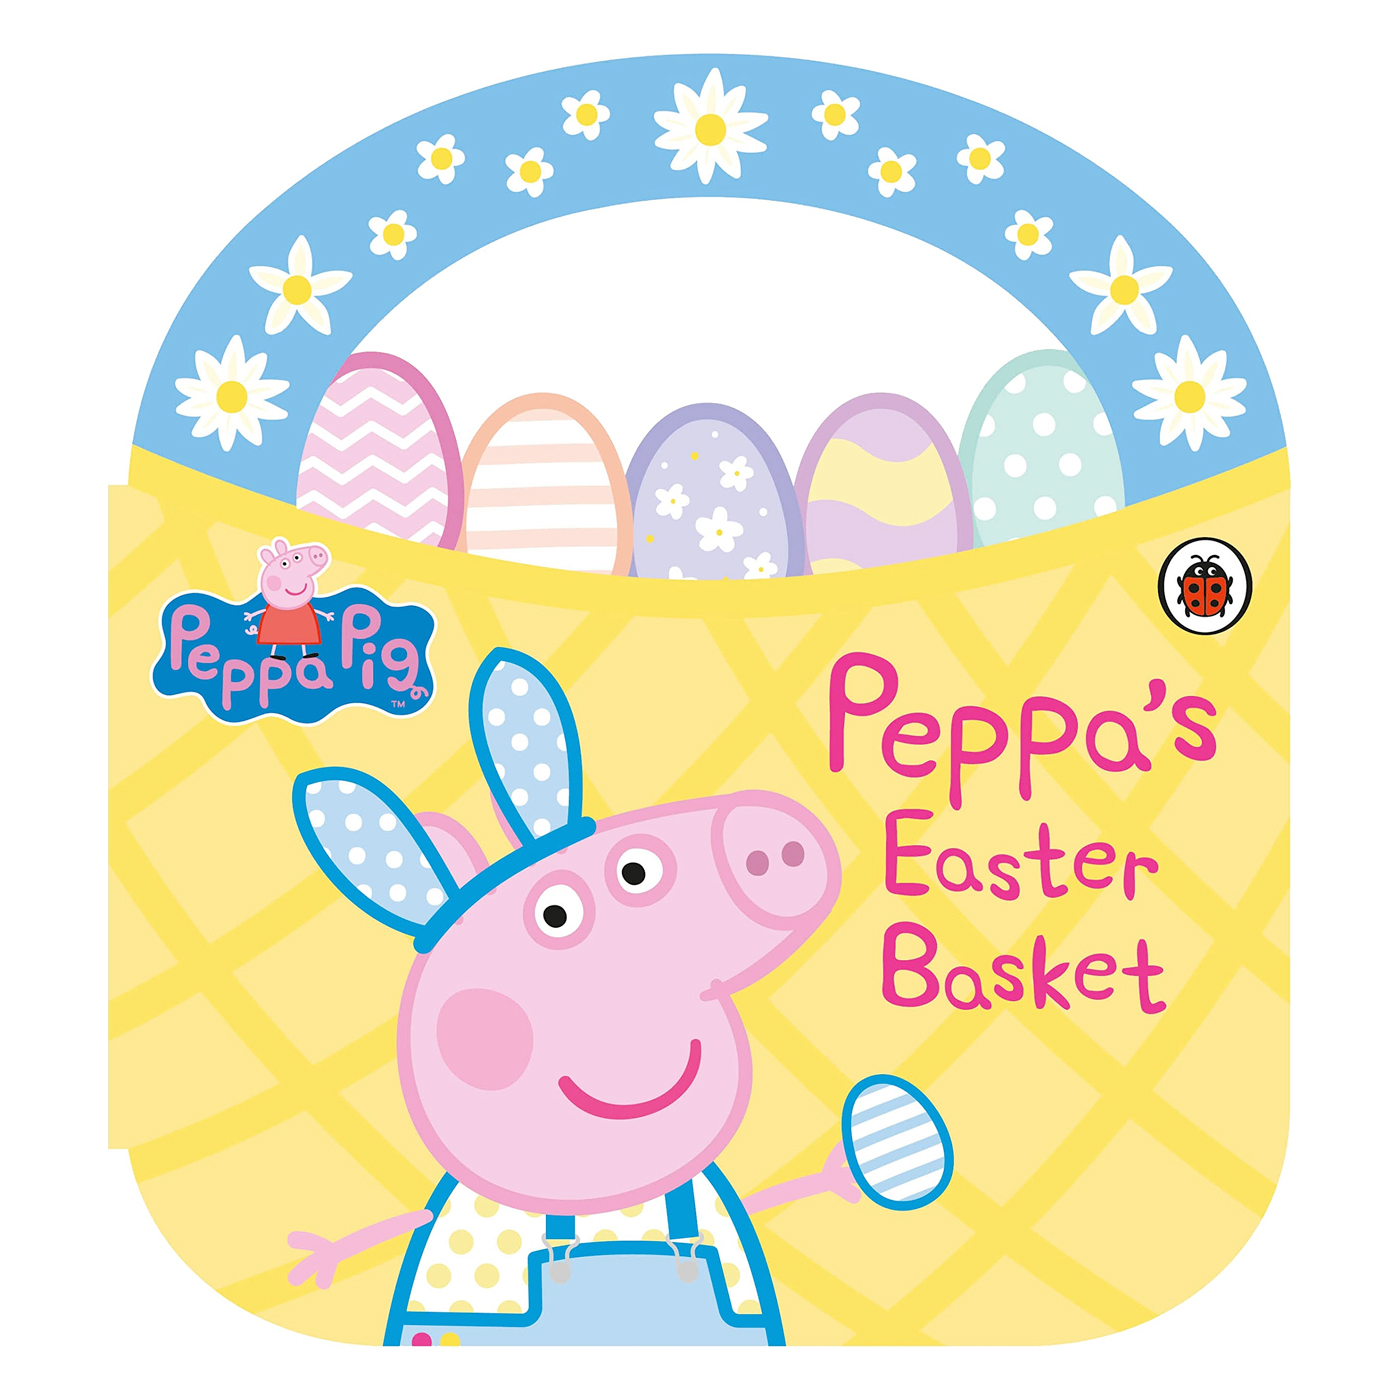  Peppa Pig: Peppa's Easter Basket